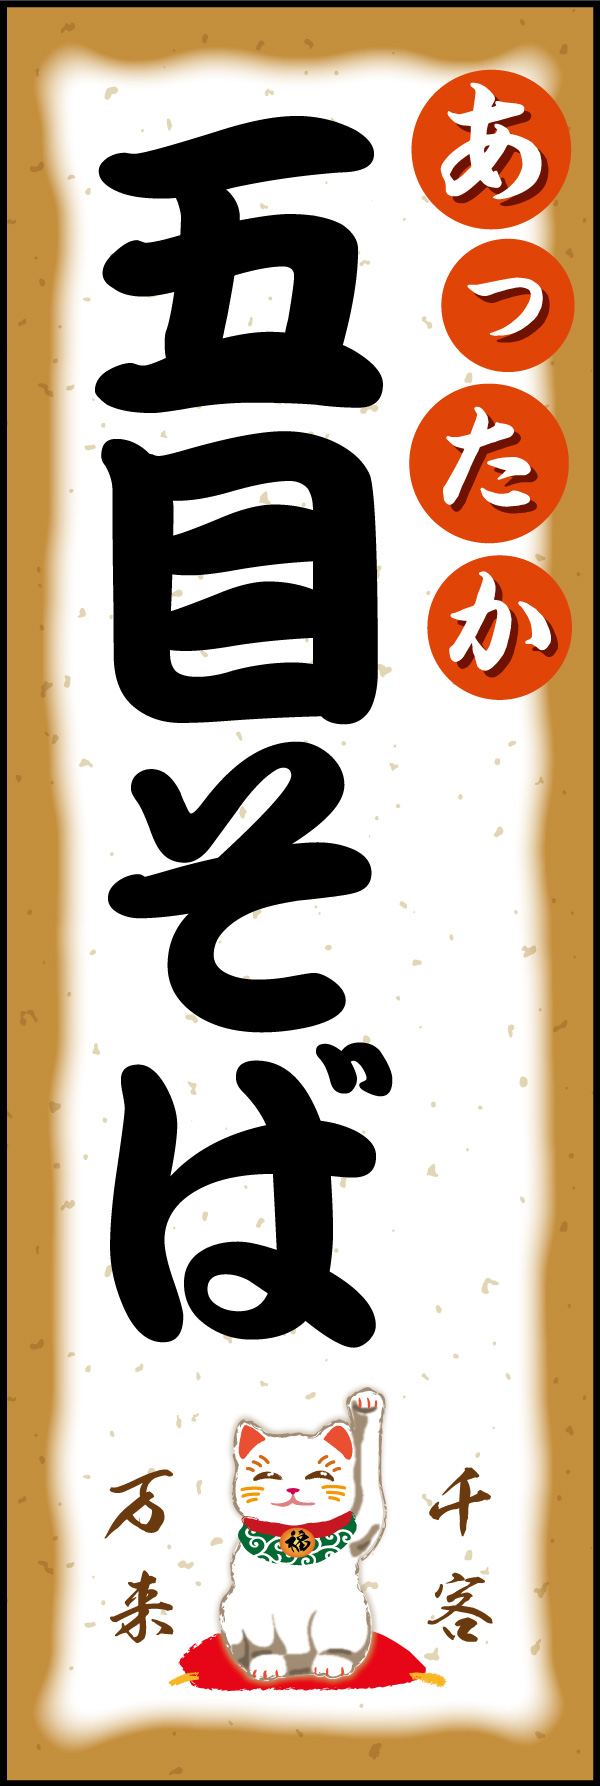 五目そば 02「札幌ラーメン」ののぼりです。札幌のこってり味噌ラーメンをイメージしてデザインしました。(Y.M) 